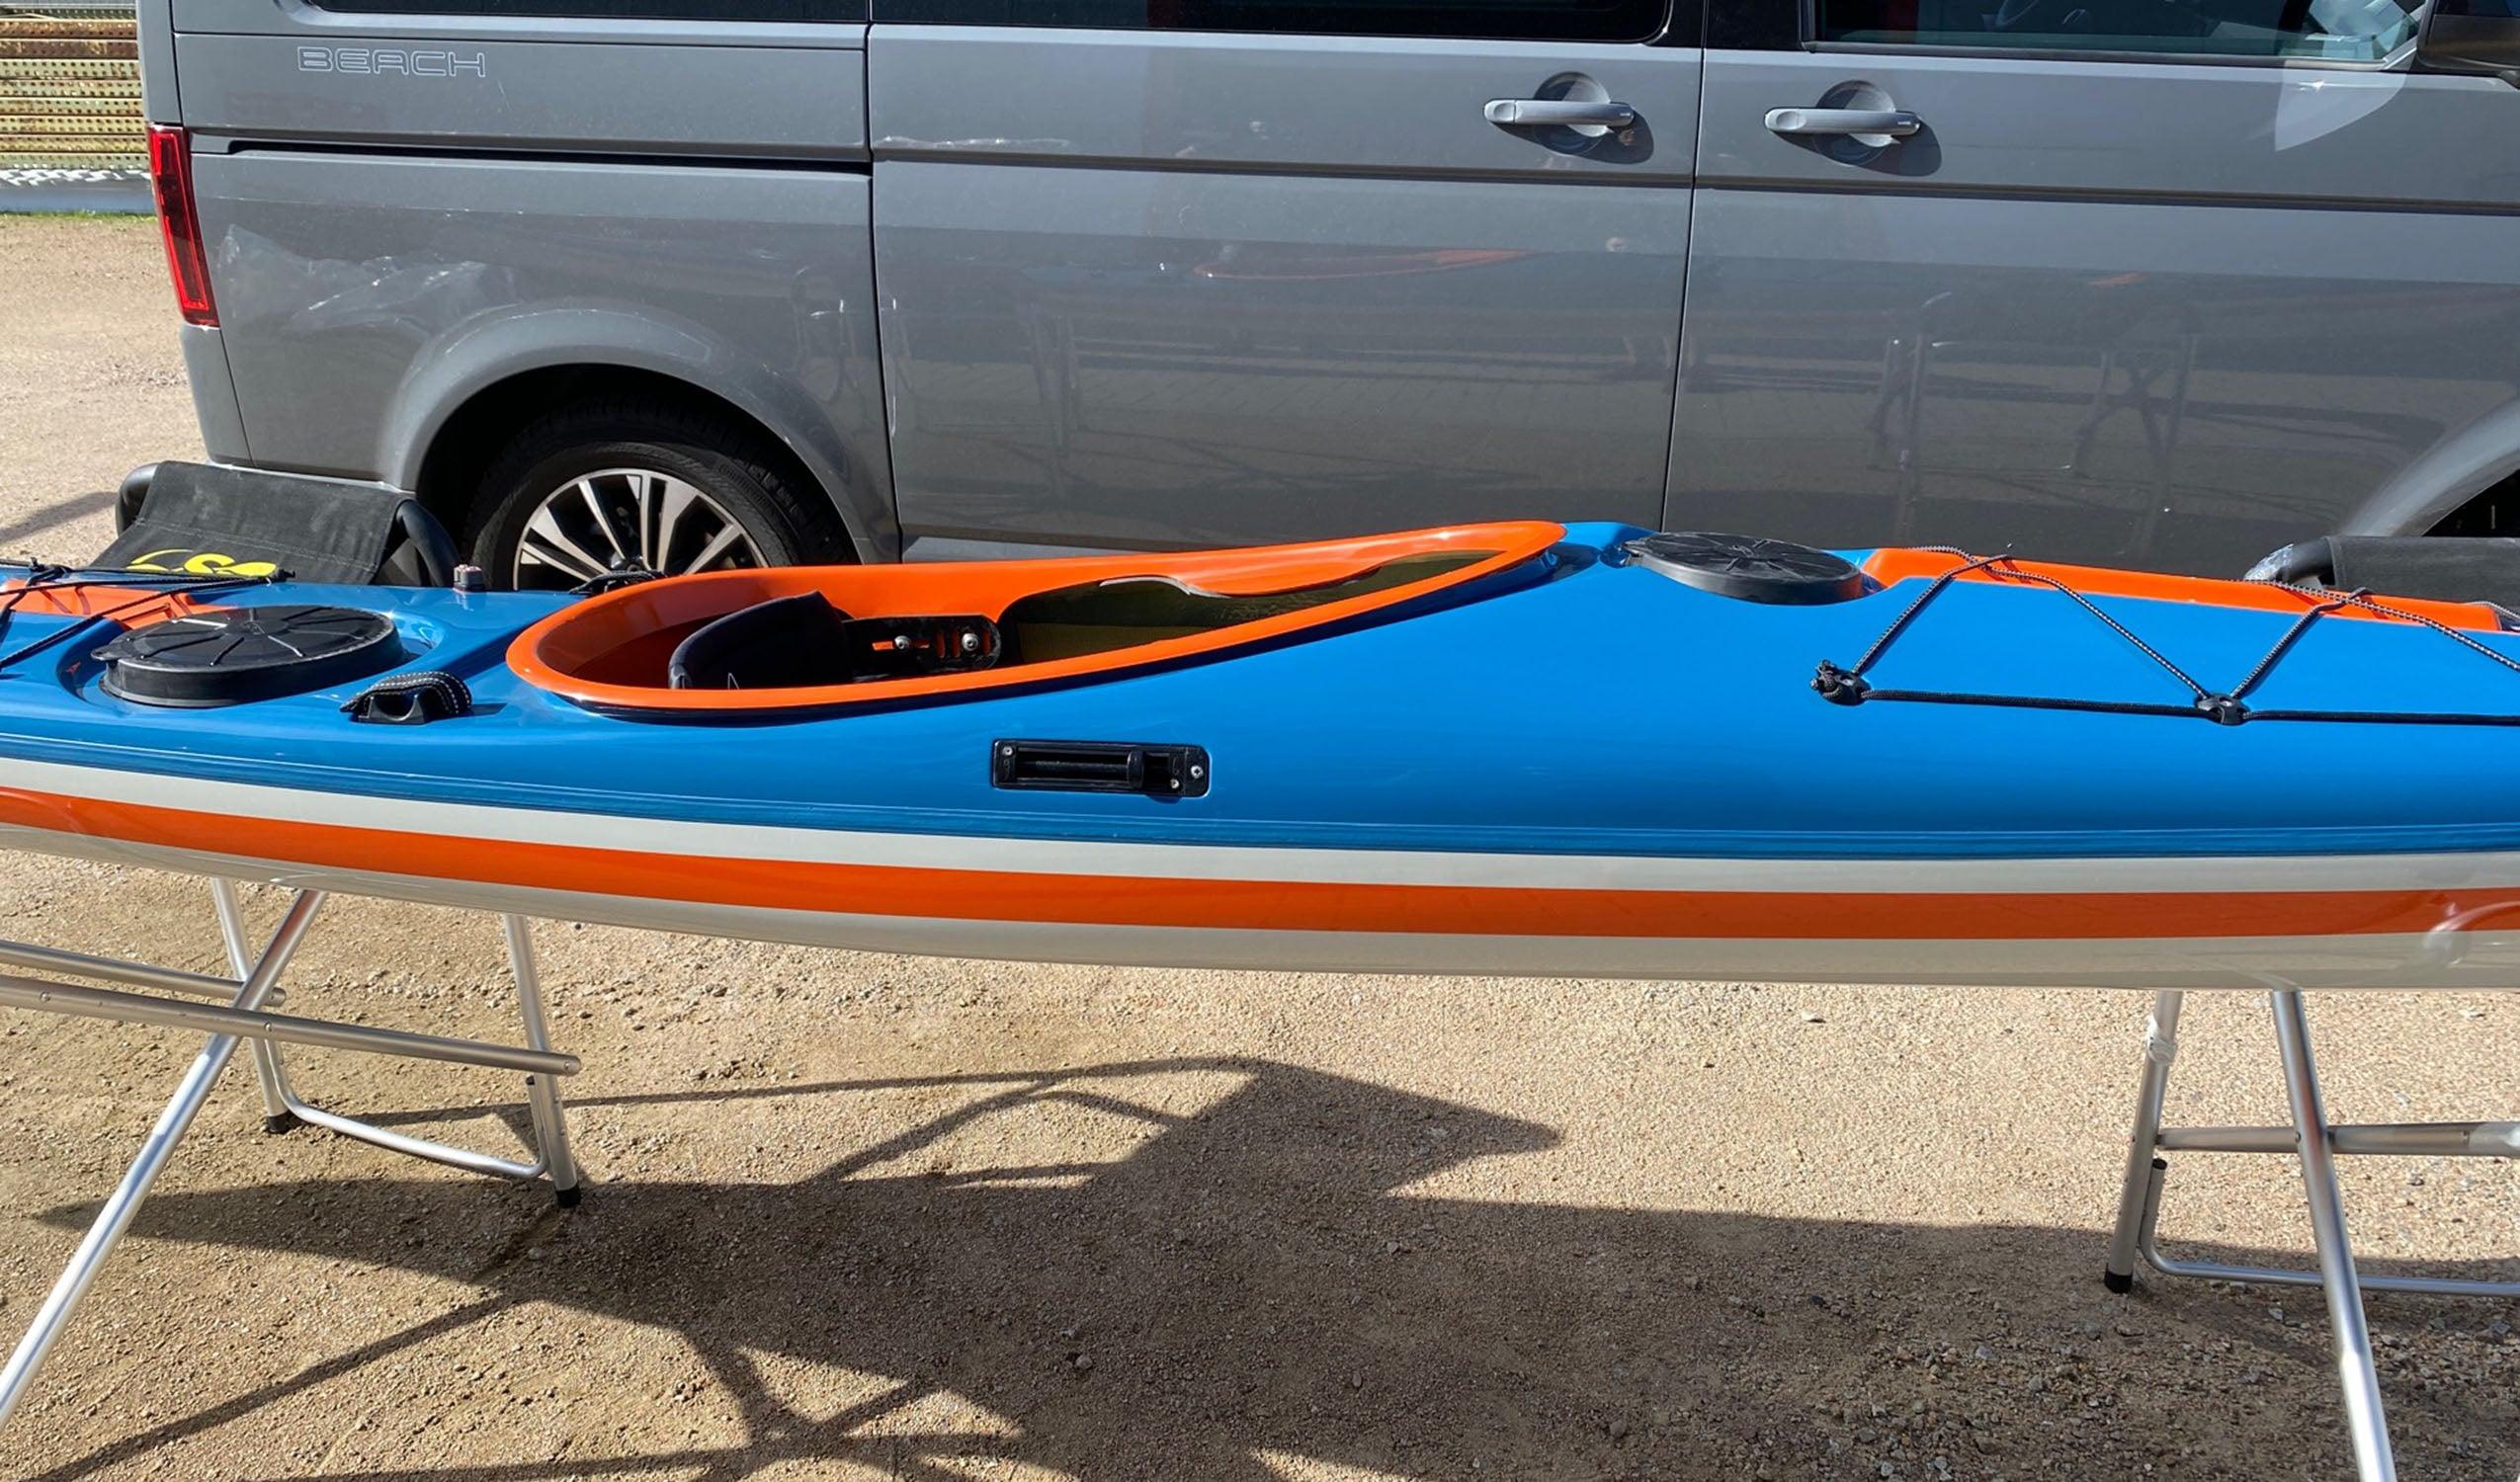 Produktbild von Kajak " Beaufort LV Rockhopper-azurblau orange " der Marke SKIM Kayaks für 4350.00 €. Erhältlich online bei Lite Venture ( www.liteventure.de )